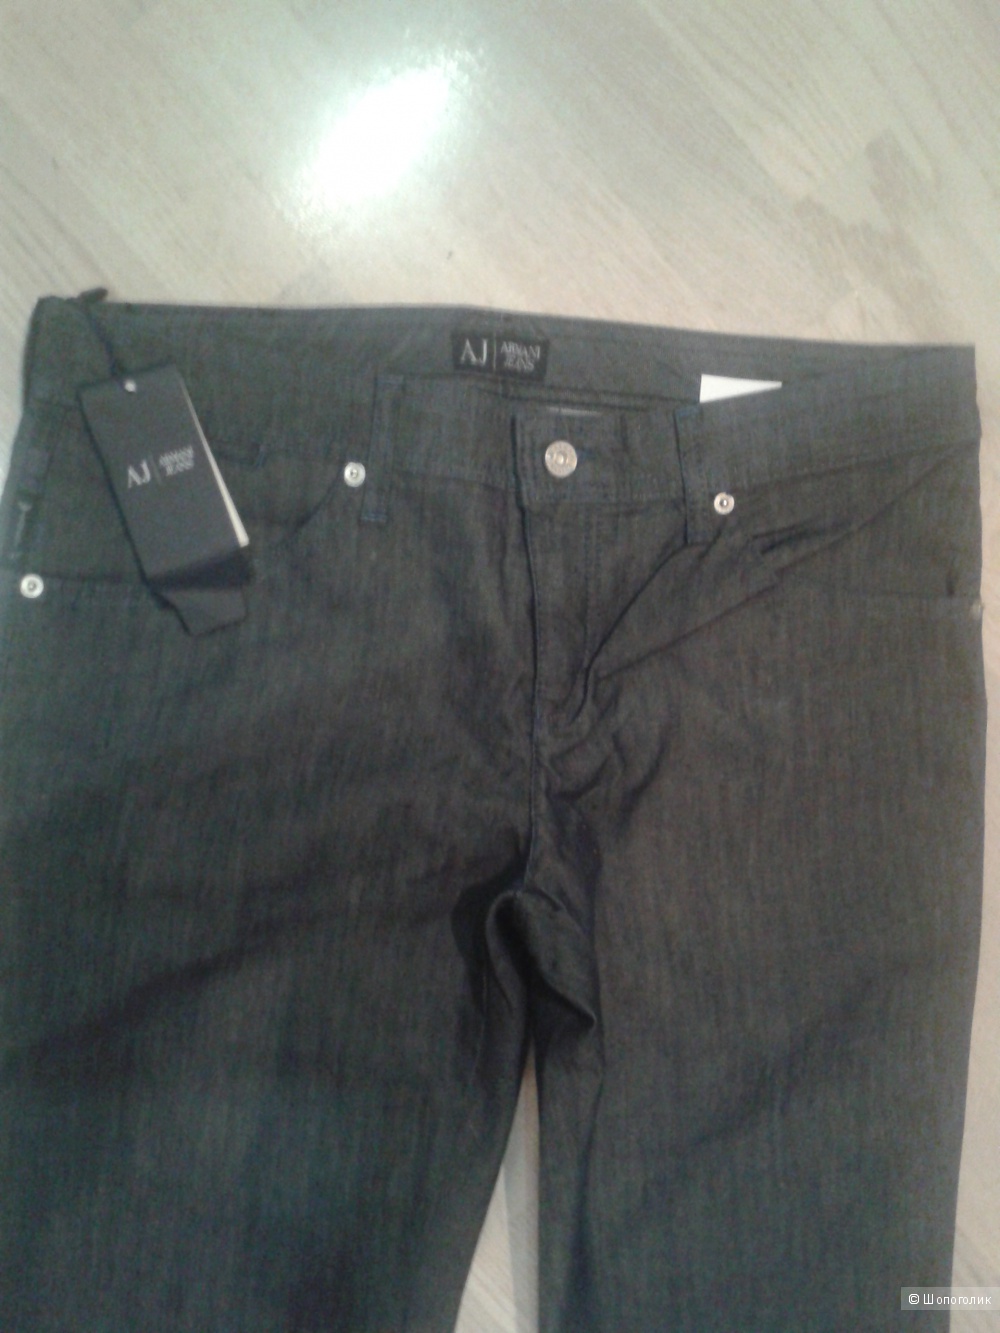 Новые джинсы Armani jeans 31 размера с этикеткой